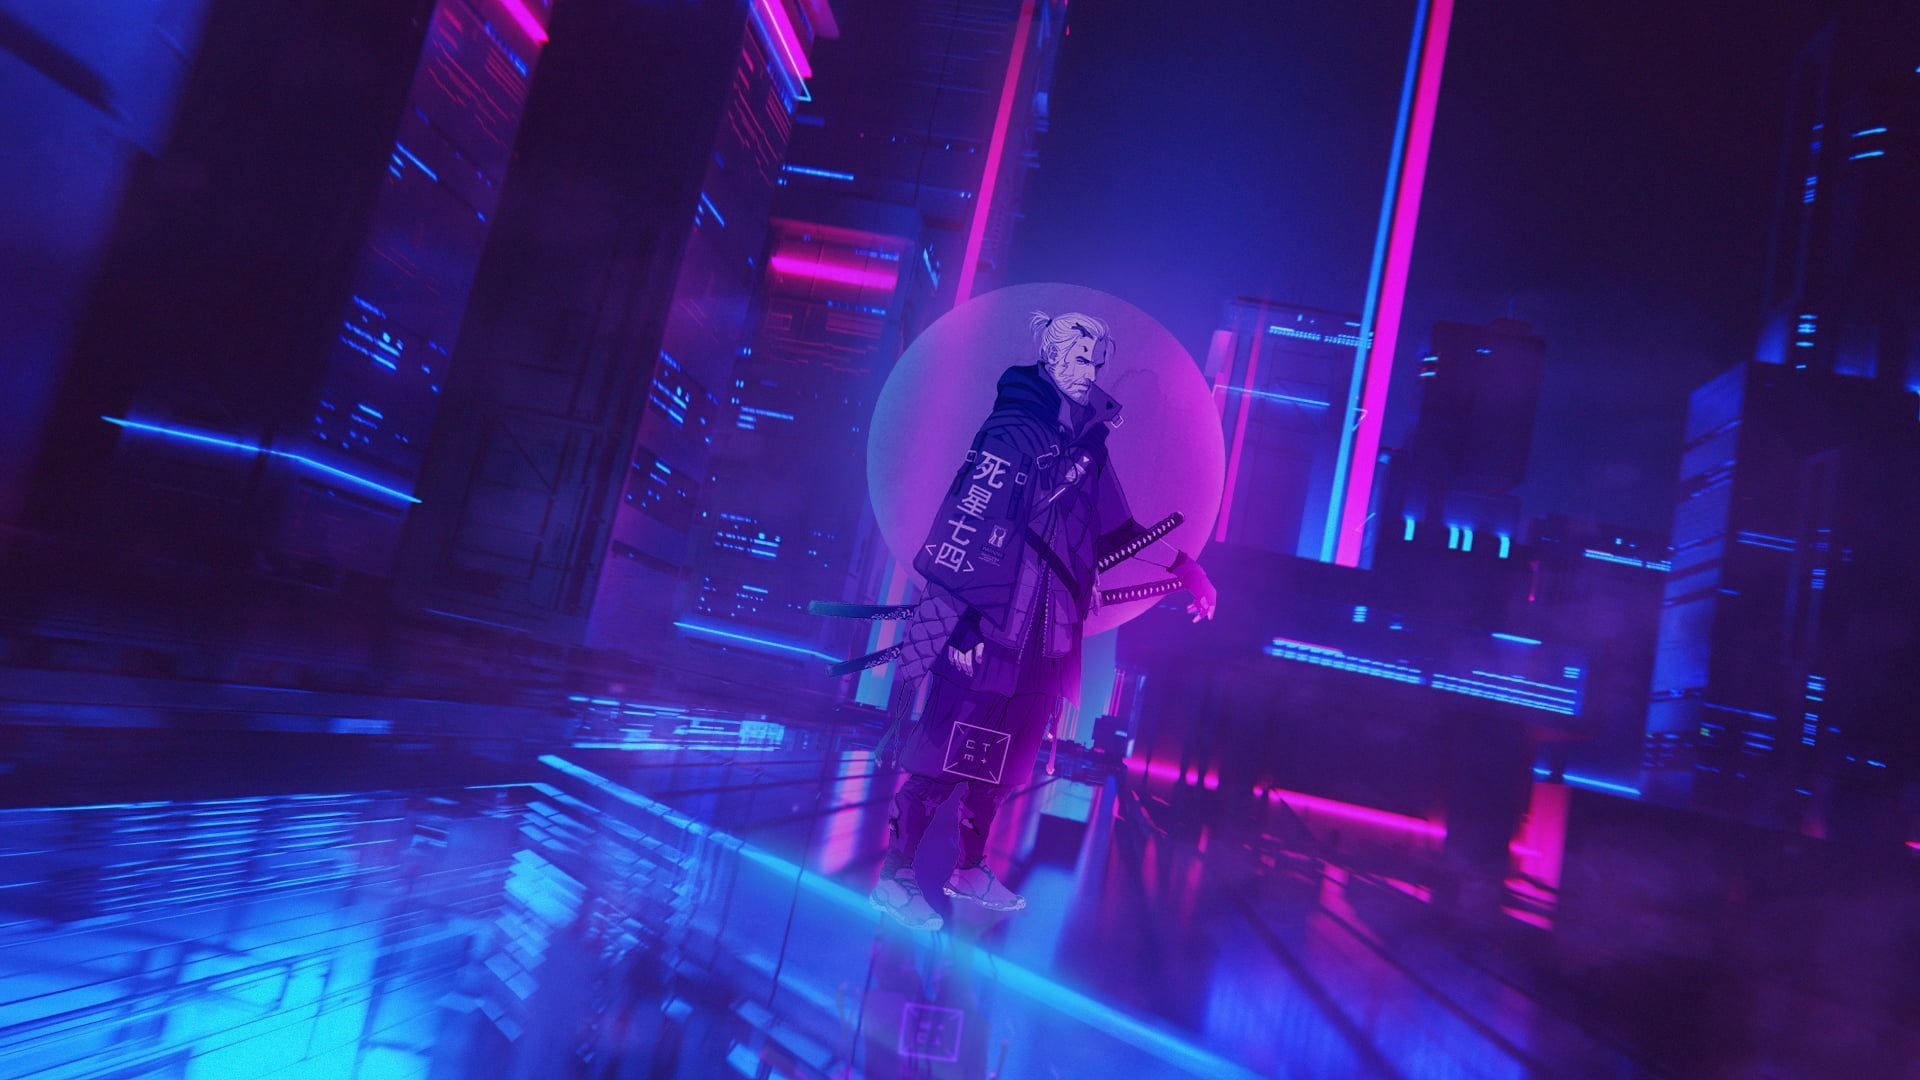 cyberpunk Cyberpunk 2077 cyber city #neon The Witcher Geralt of Rivia P #wallpaper #hdwallpaper #desktop в 2020 г. Киберпанк